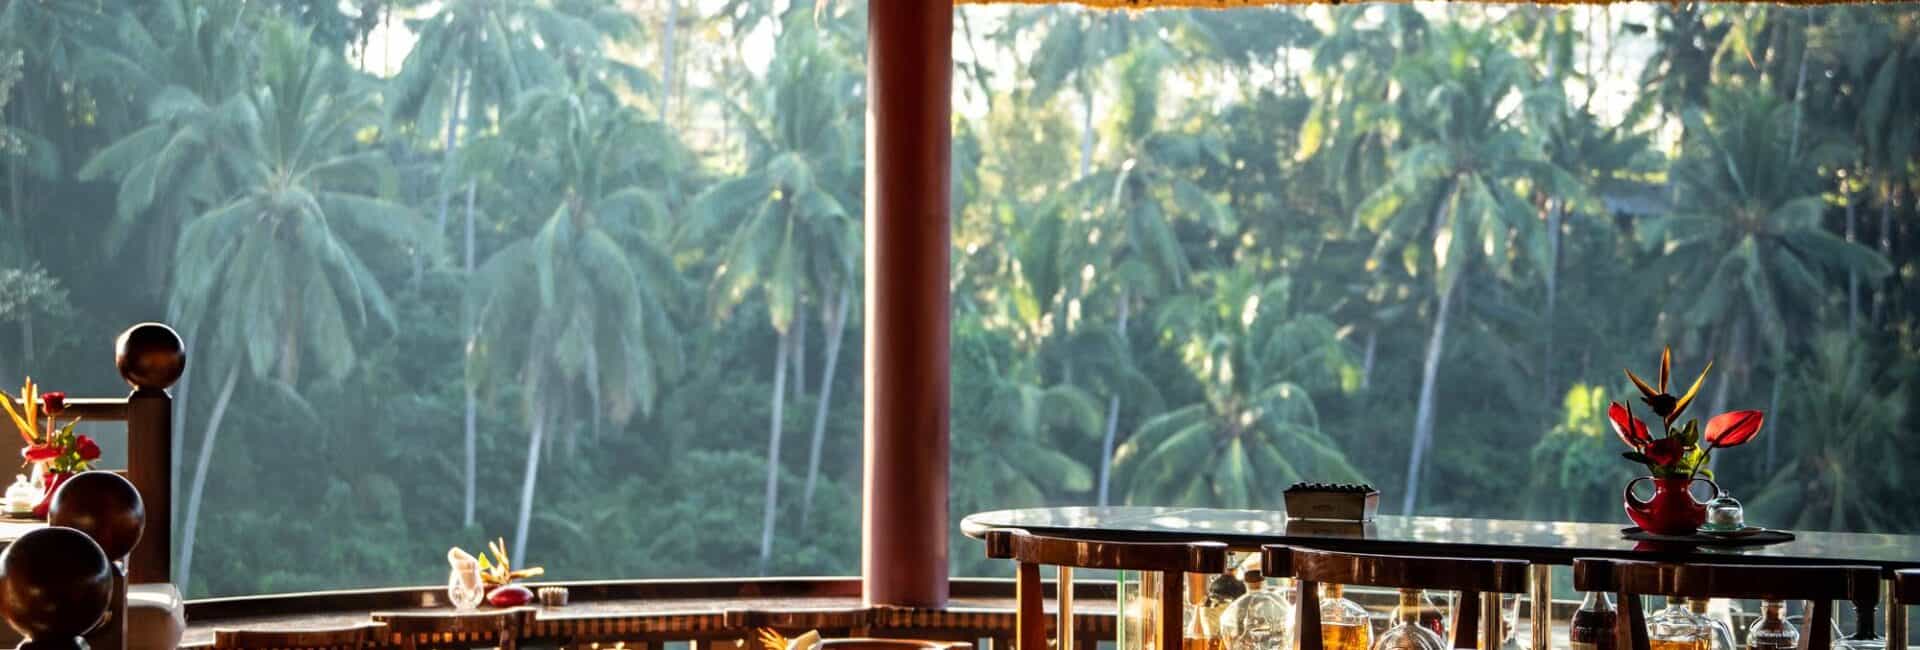 Viceroy Bali - Cascades Restaurant